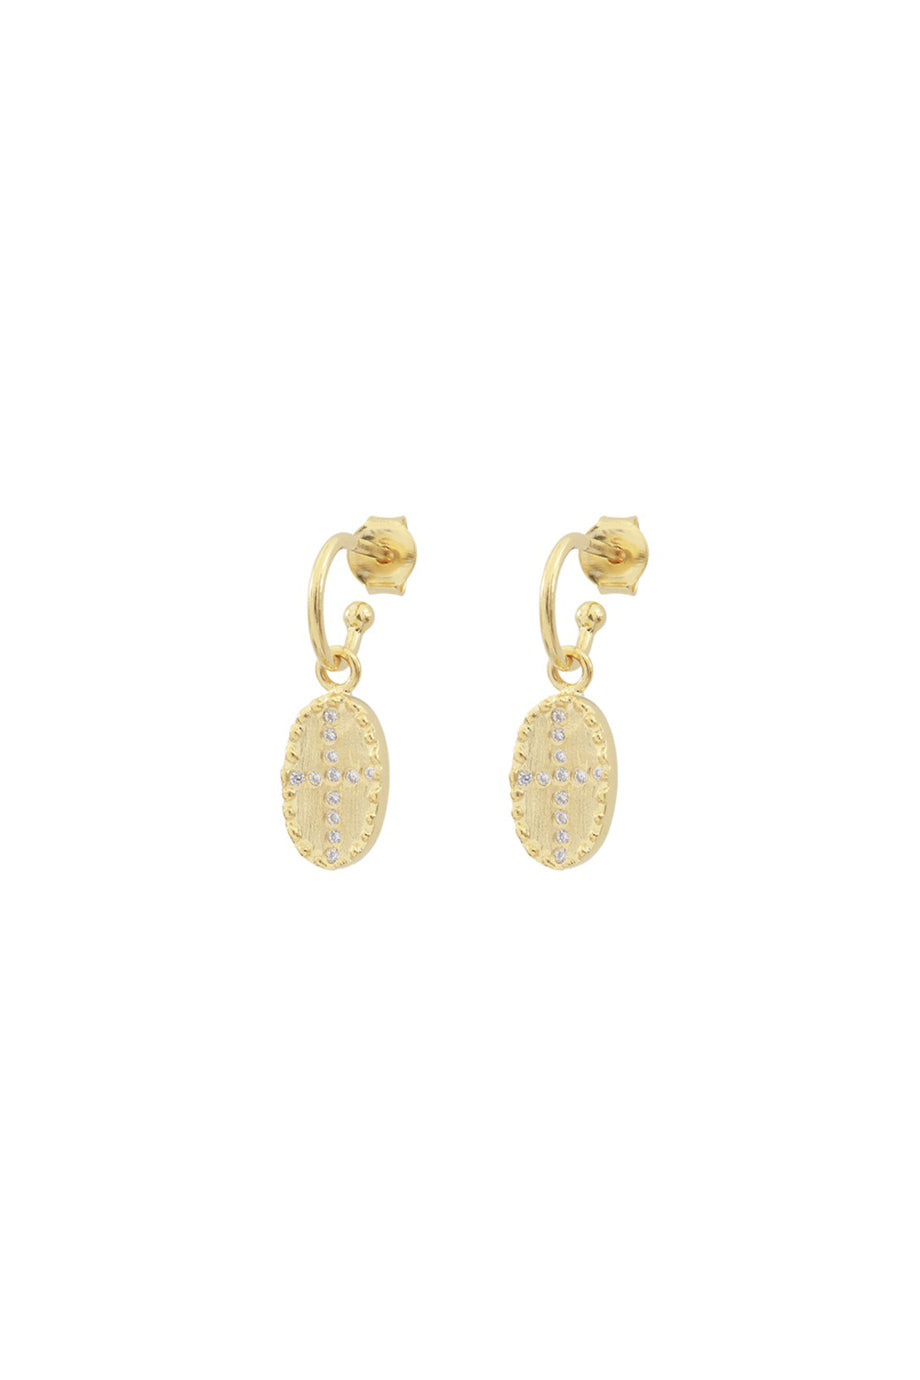 Louise Hendricks Bazile Earrings - Gold